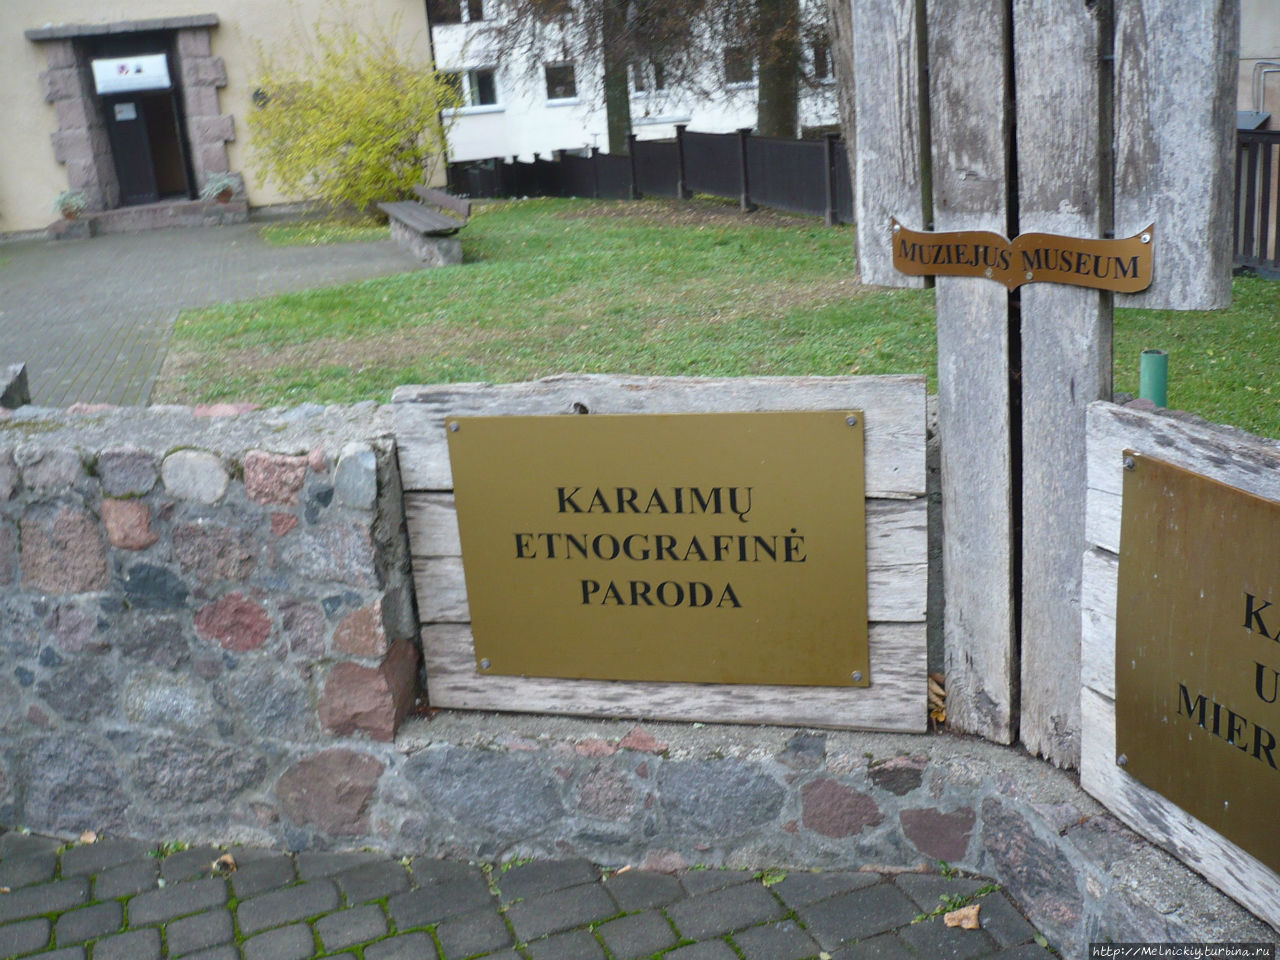 Караимский этнографический музей Тракай, Литва